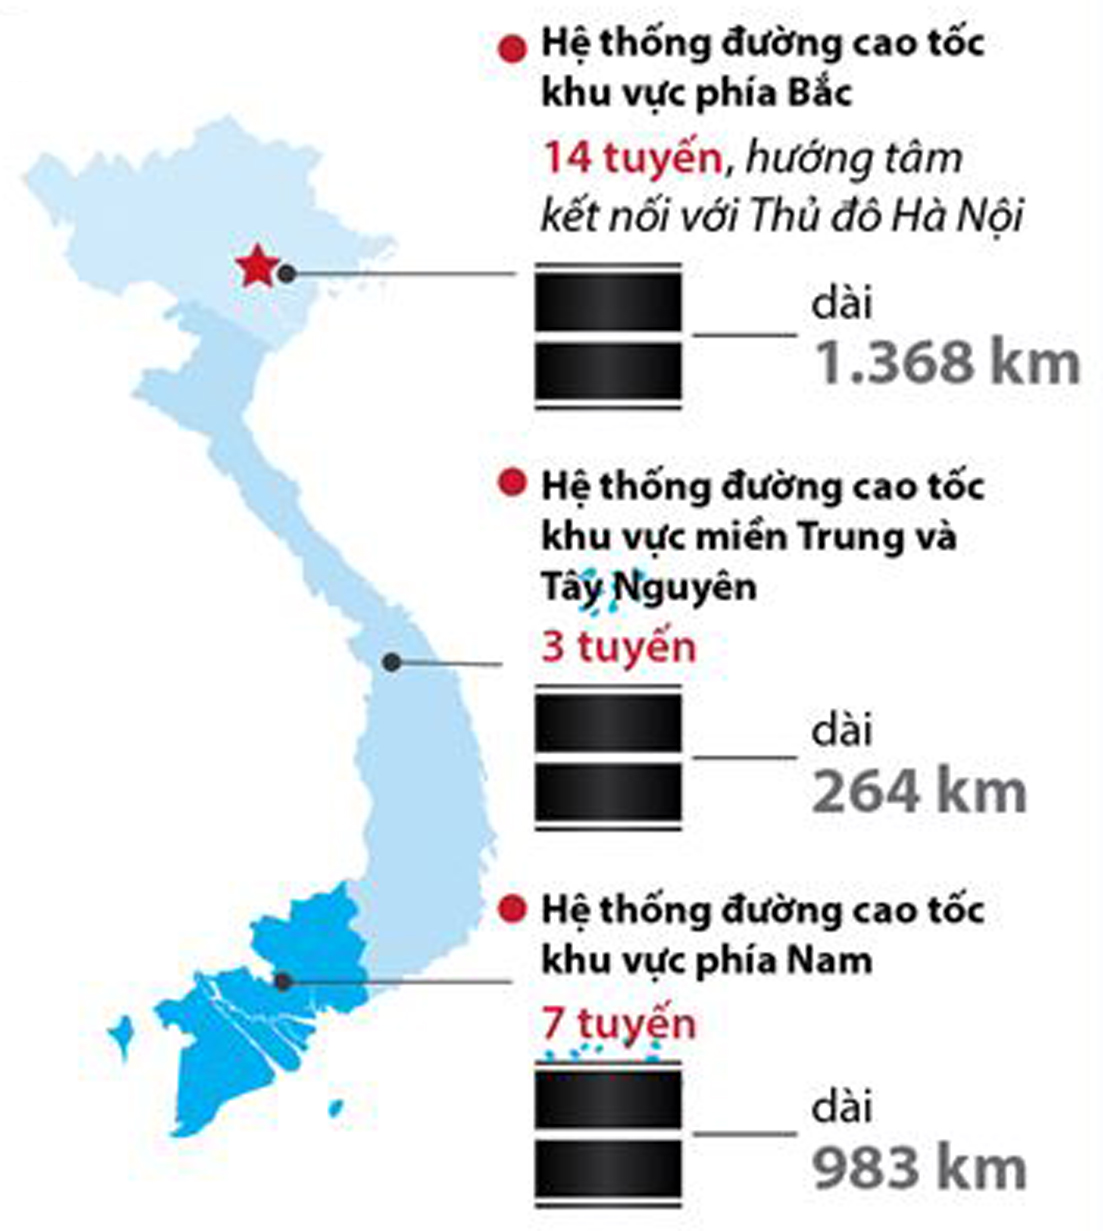  Quy hoạch phát triển mạng đường bộ cao tốc Việt Nam đến năm 2020 và định hướng đến năm 2030. Nguồn: TTX